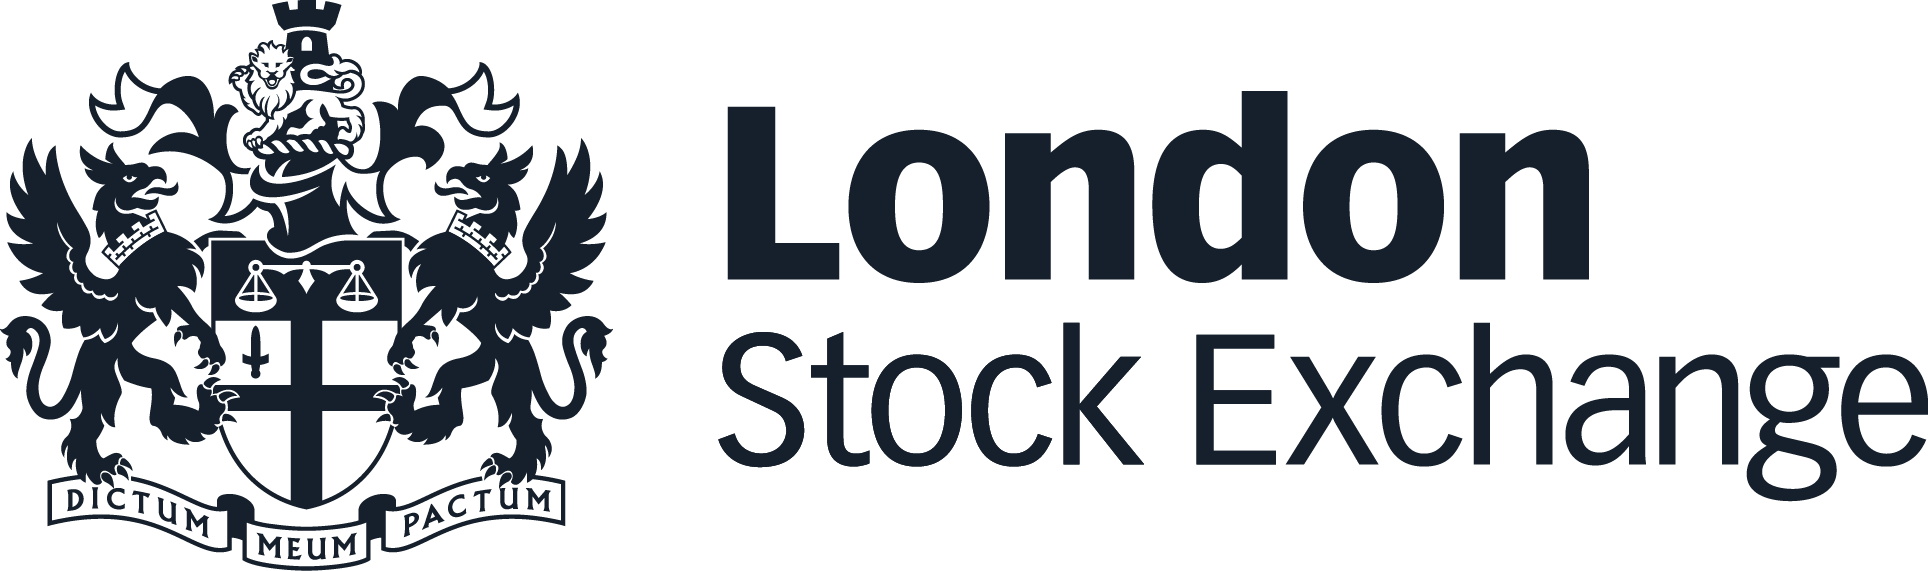 London Stock Exchange - Level 2